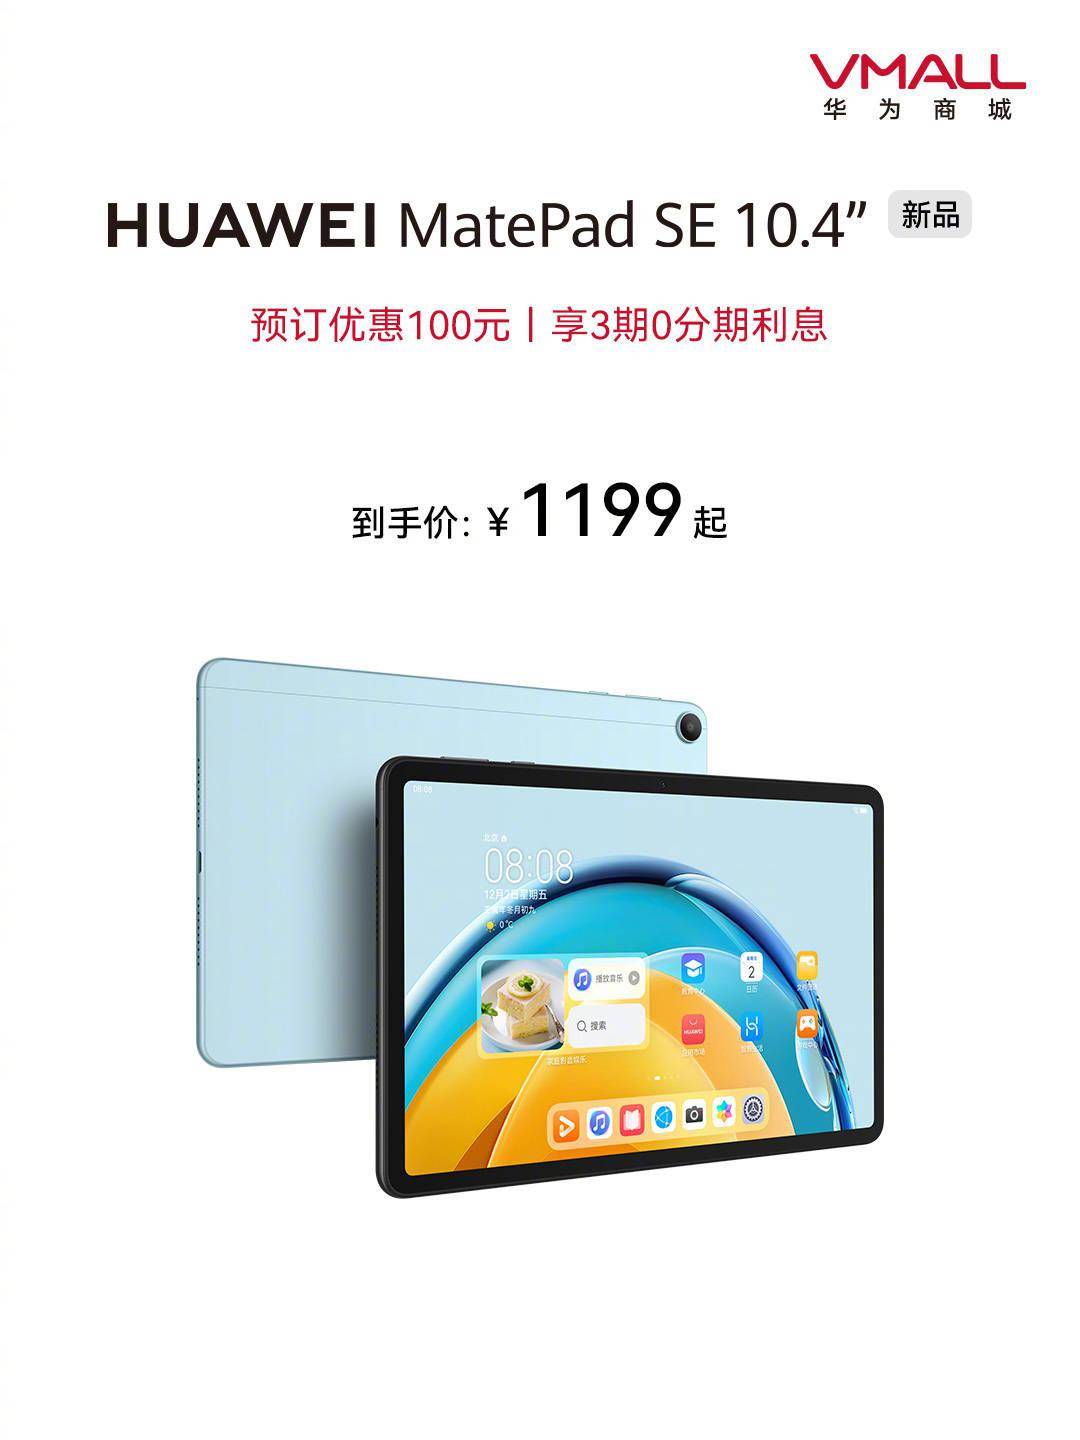 华为平板手机8英寸
:华为推出全新 MatePad SE 10.4 英寸平板电脑，4+128GB版本1199元